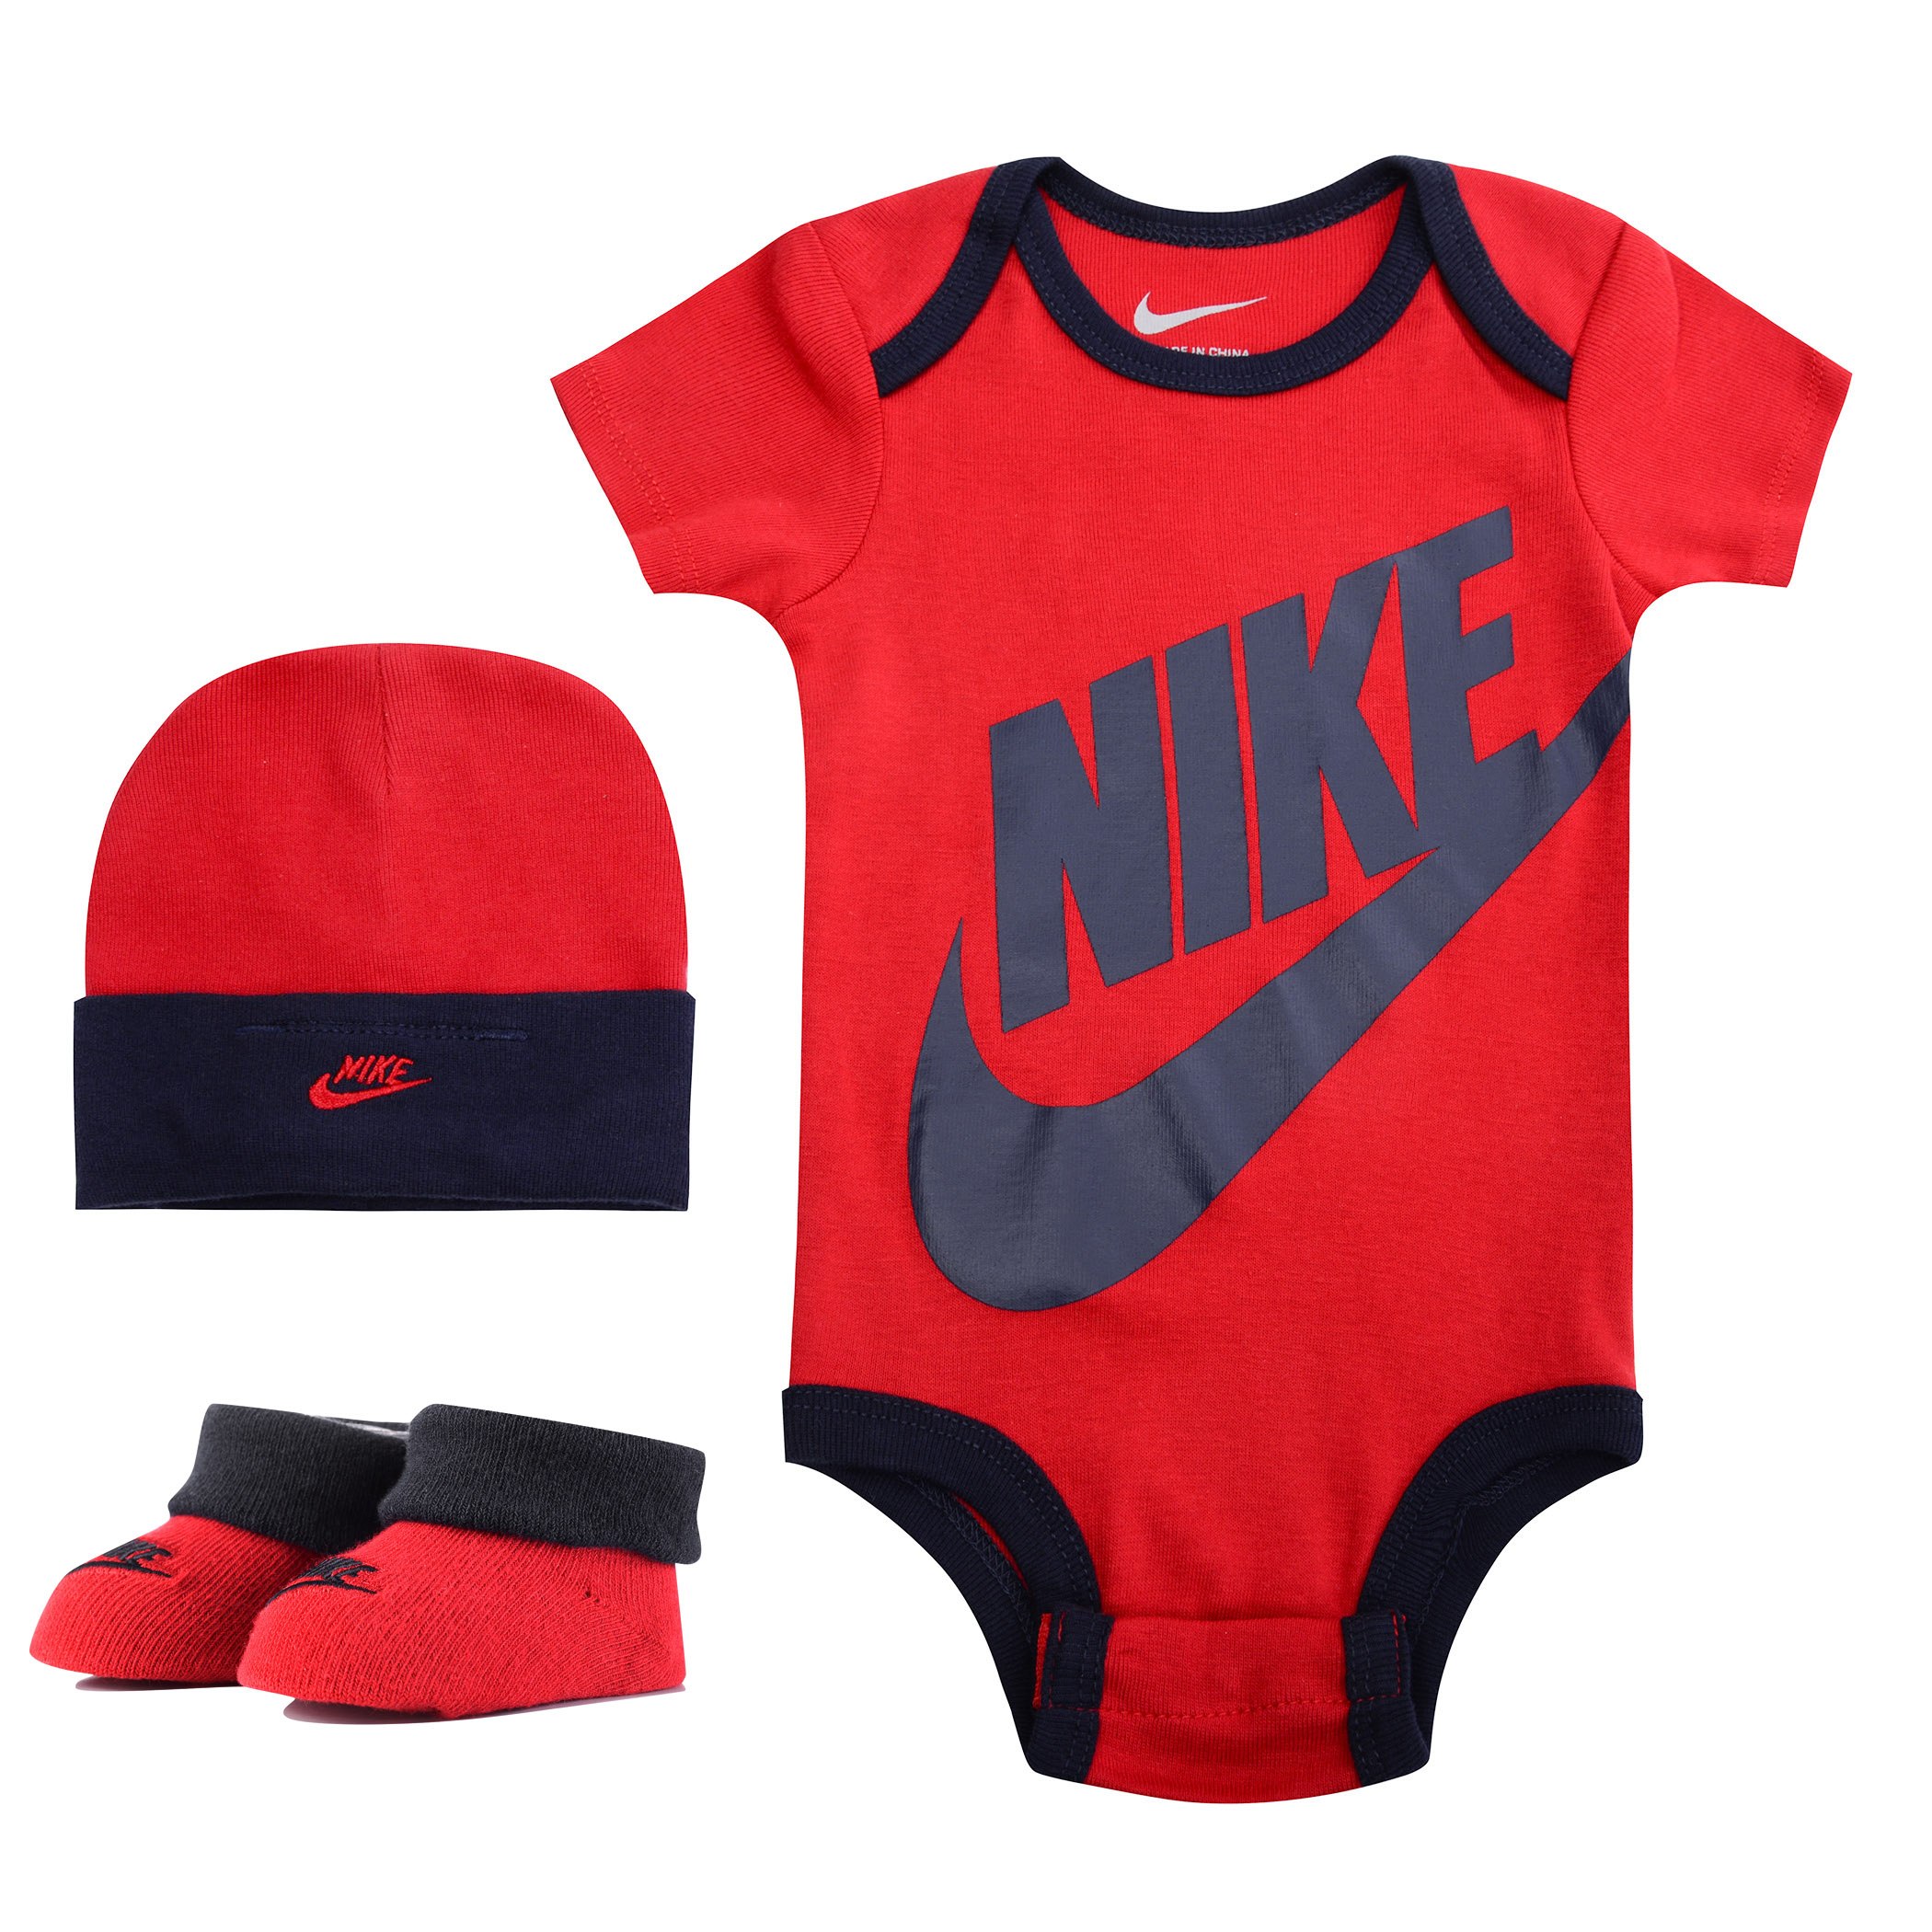 Найк для мальчика купить. Спортивные вещи для детей. Одежда для новорожденных найк. Одежда Nike для малышей. Комплект для младенцев Nike.